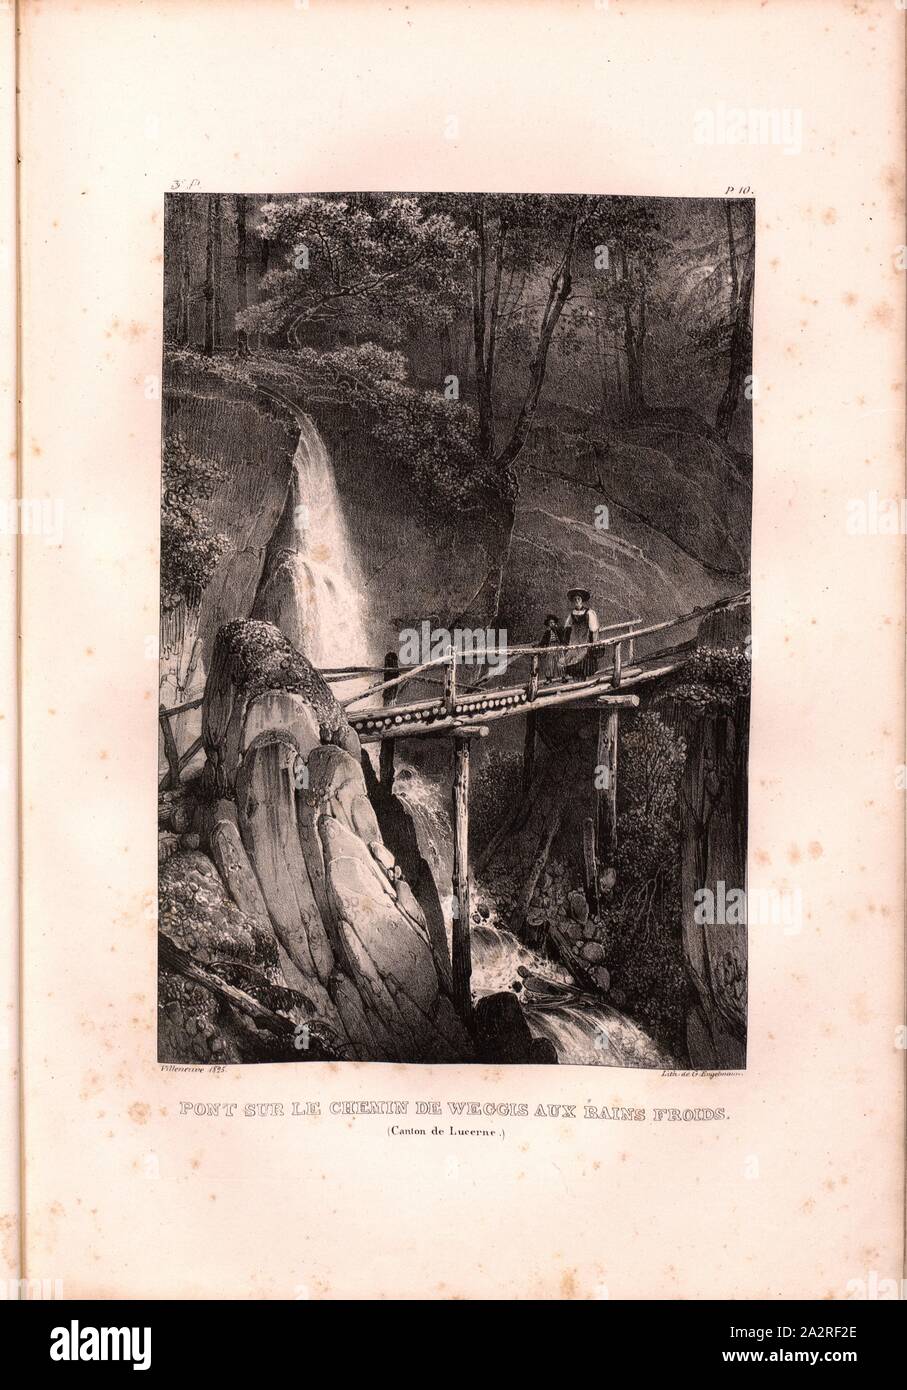 Bridge on the Weggis path to cold baths, Path from Weggis to Kaltbad, Signed: Villeneuve, G. Engelmann, Lithograph, Plate 10 (Vol. 1, Part 3), Villeneuve, M. (ft.); Engelmann, Godefroy (lith.), 1825, Hilaire Léon Sazerac, Godefroy Engelmann: Lettres sur la Suisse (...). Paris: [s.n.], 1823-1832 Stock Photo